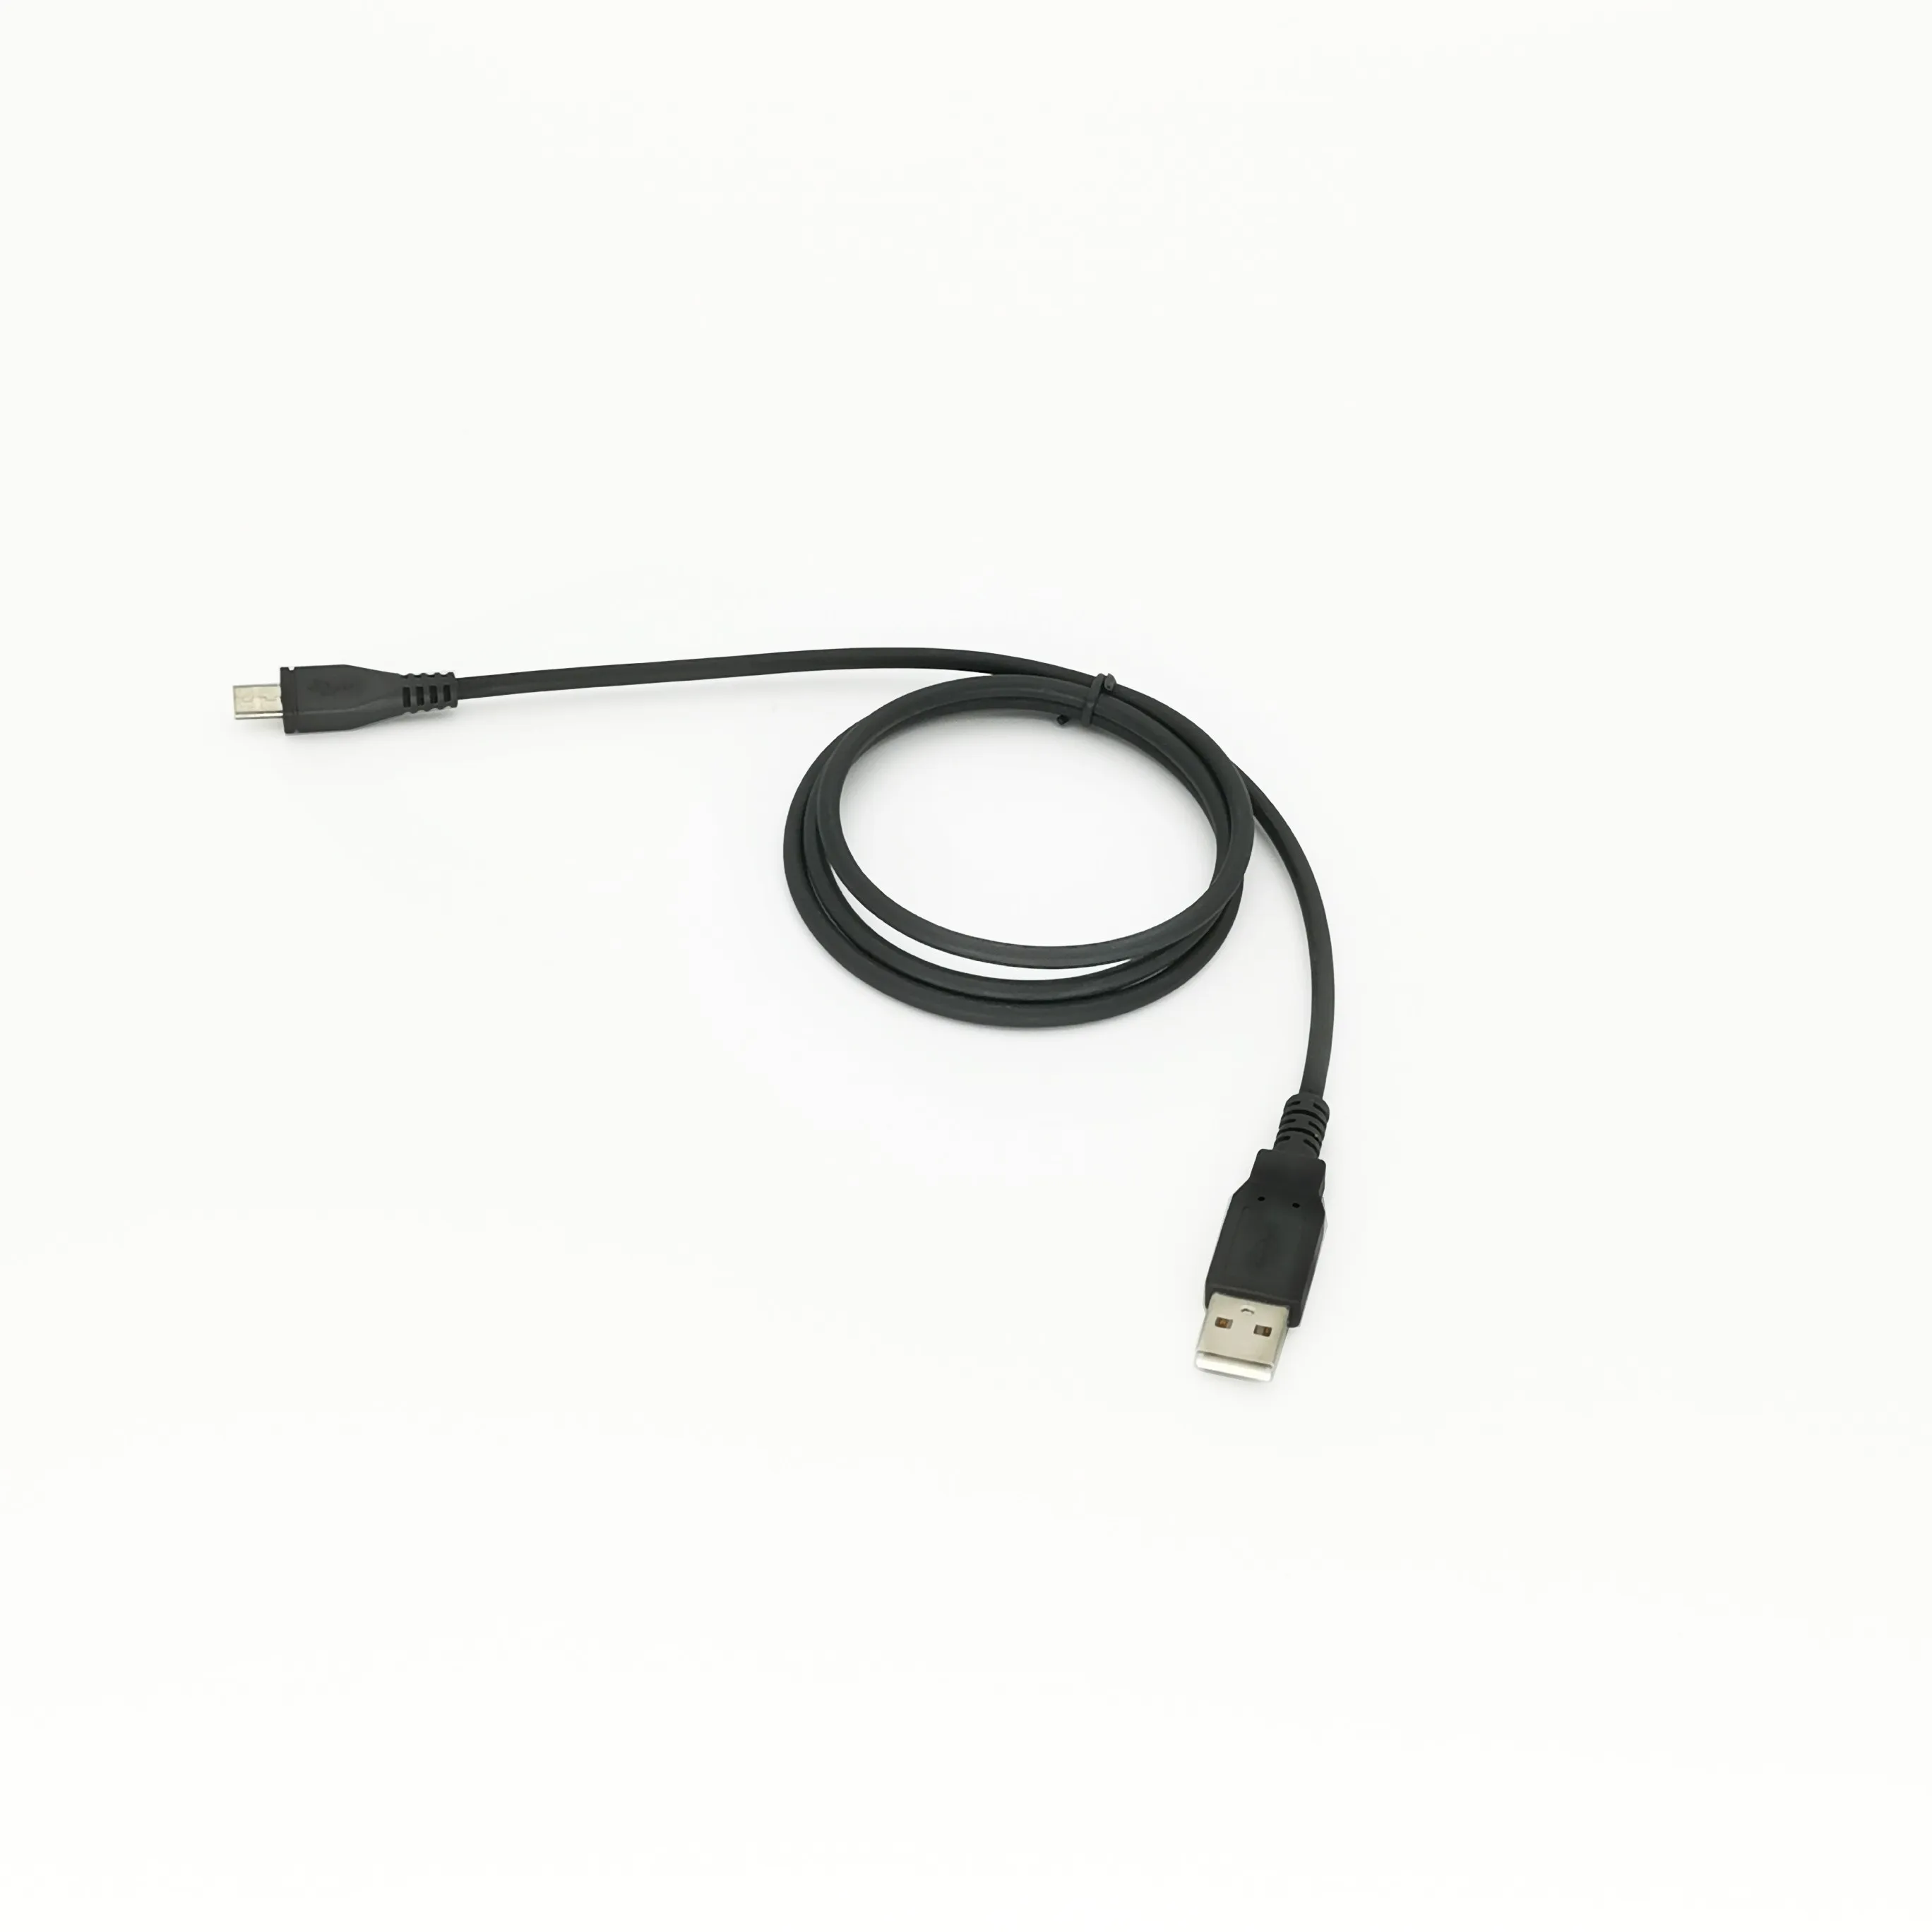 

USB Programming Cable for motorola XIR P3688 DEP450 DP1400 Walkie Talkie